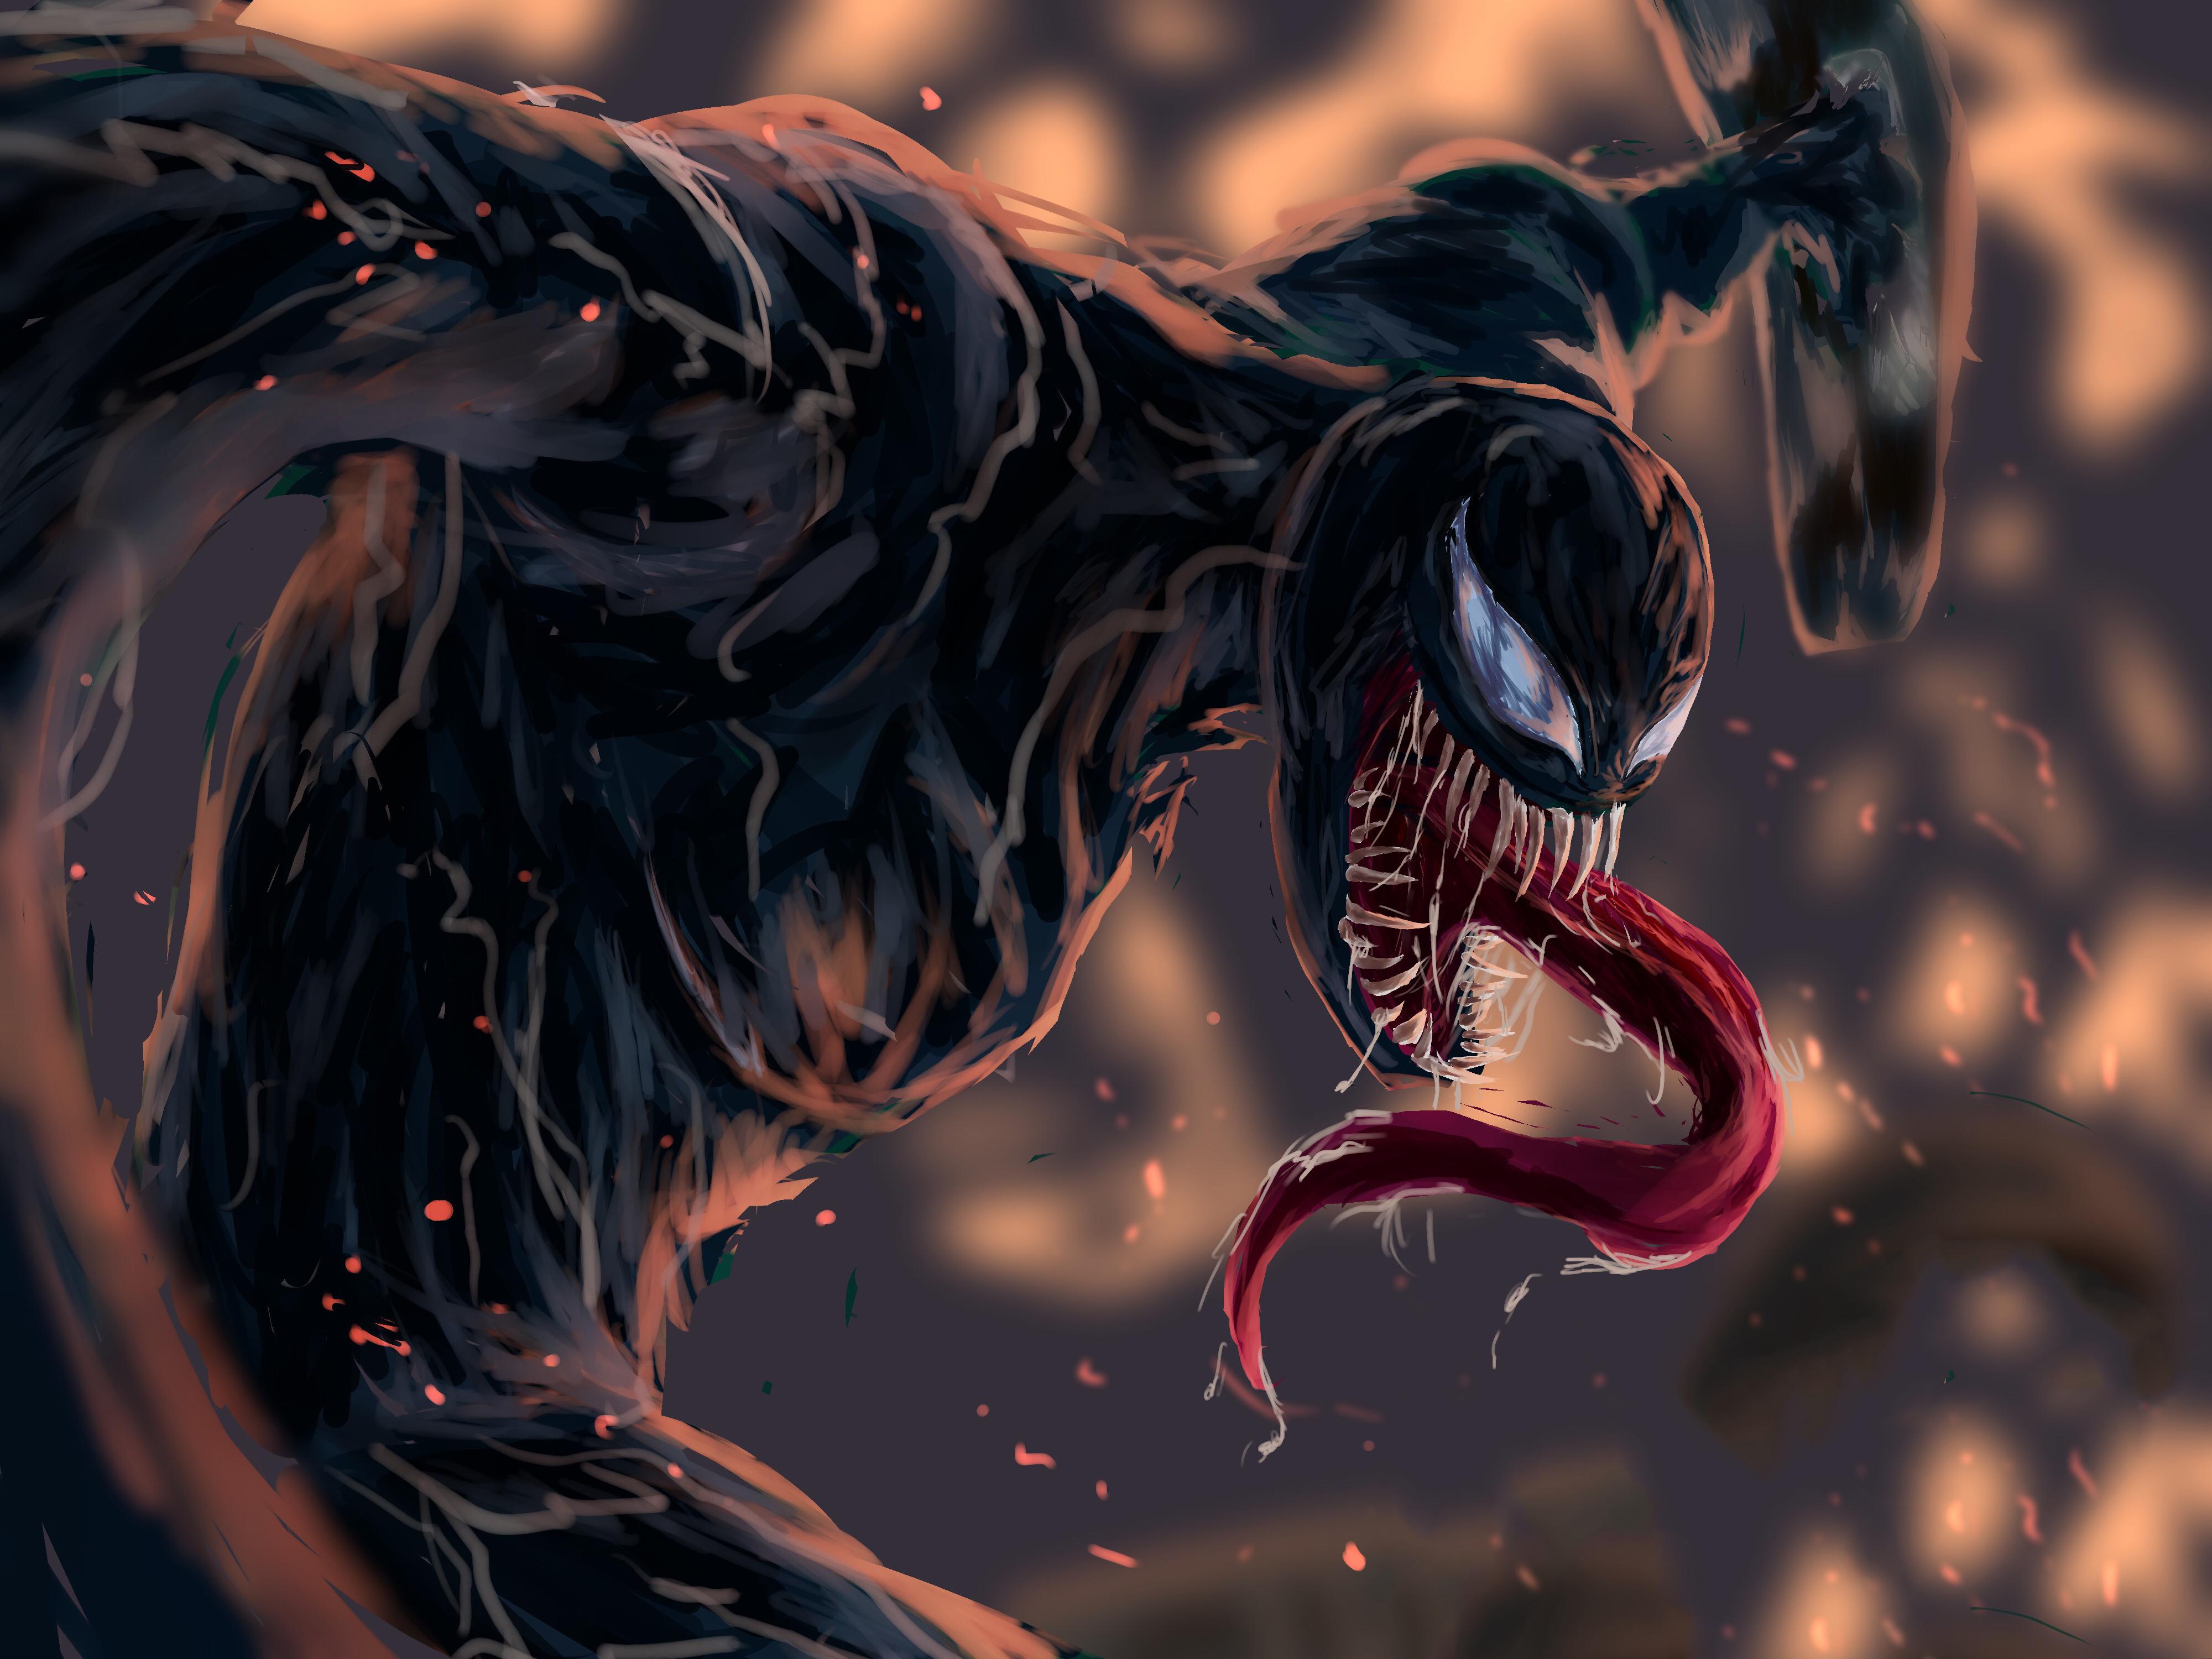 4000 x 3000 · jpeg - Venom 4k Fan Artwork, HD Superheroes, 4k Wallpapers, Images ...